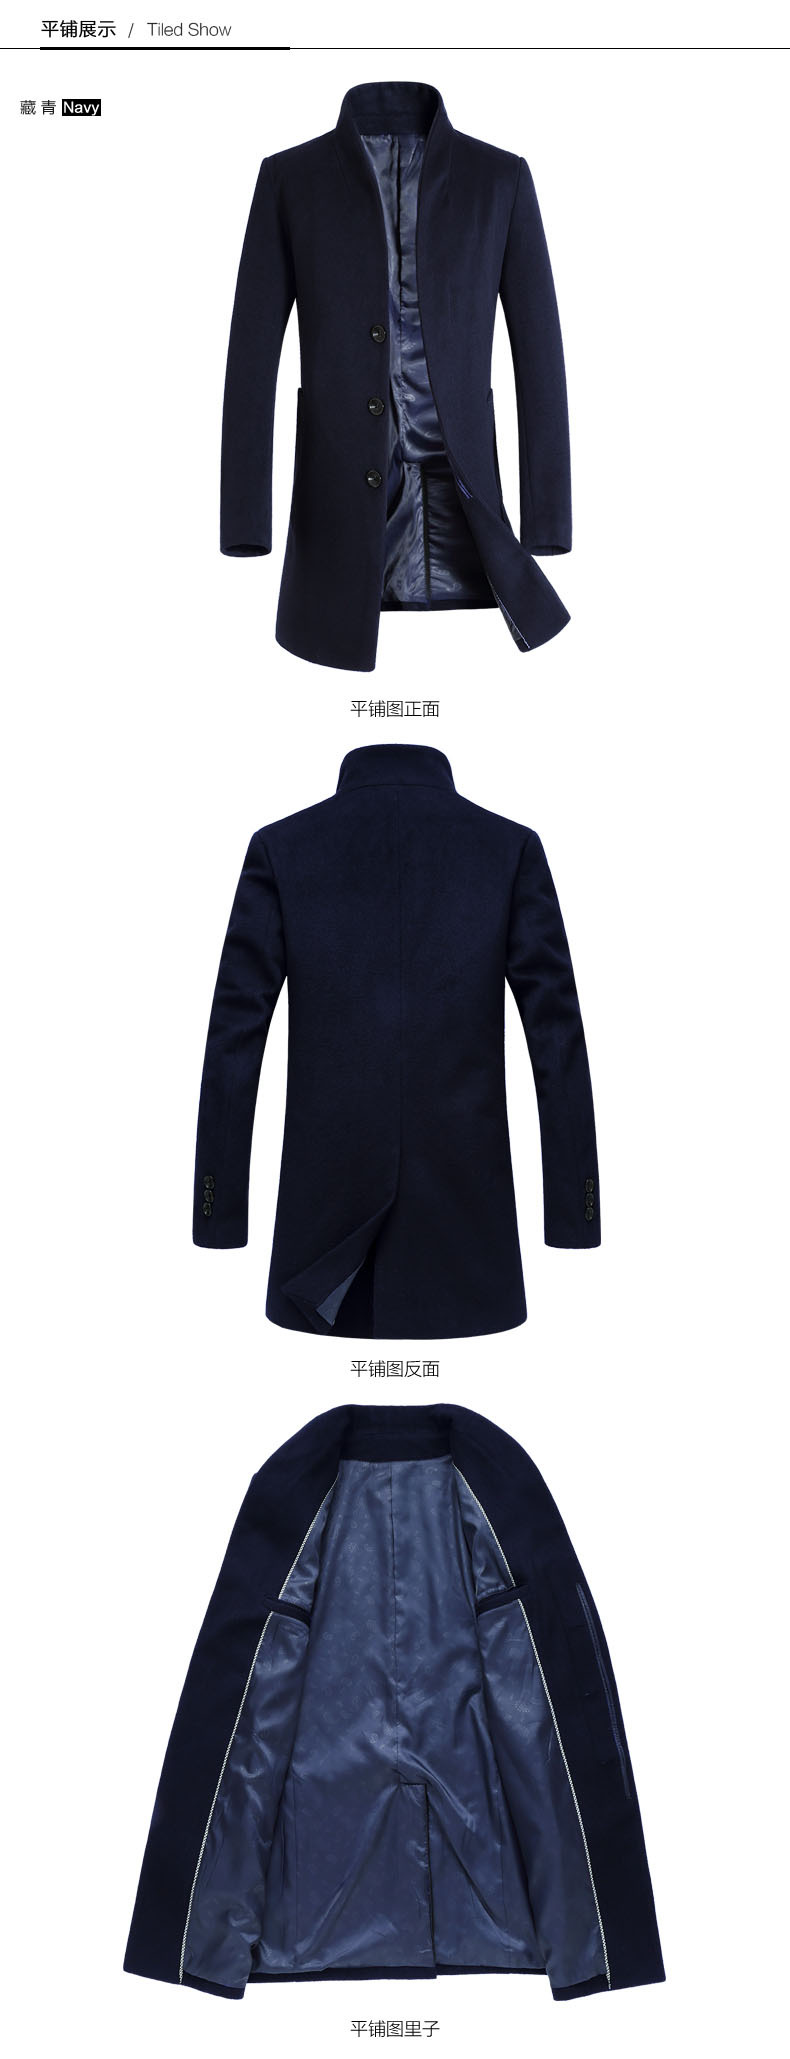 司奇隆 秋冬新款男式羊毛呢大衣 中长款青年韩版修身男装风衣外套1681